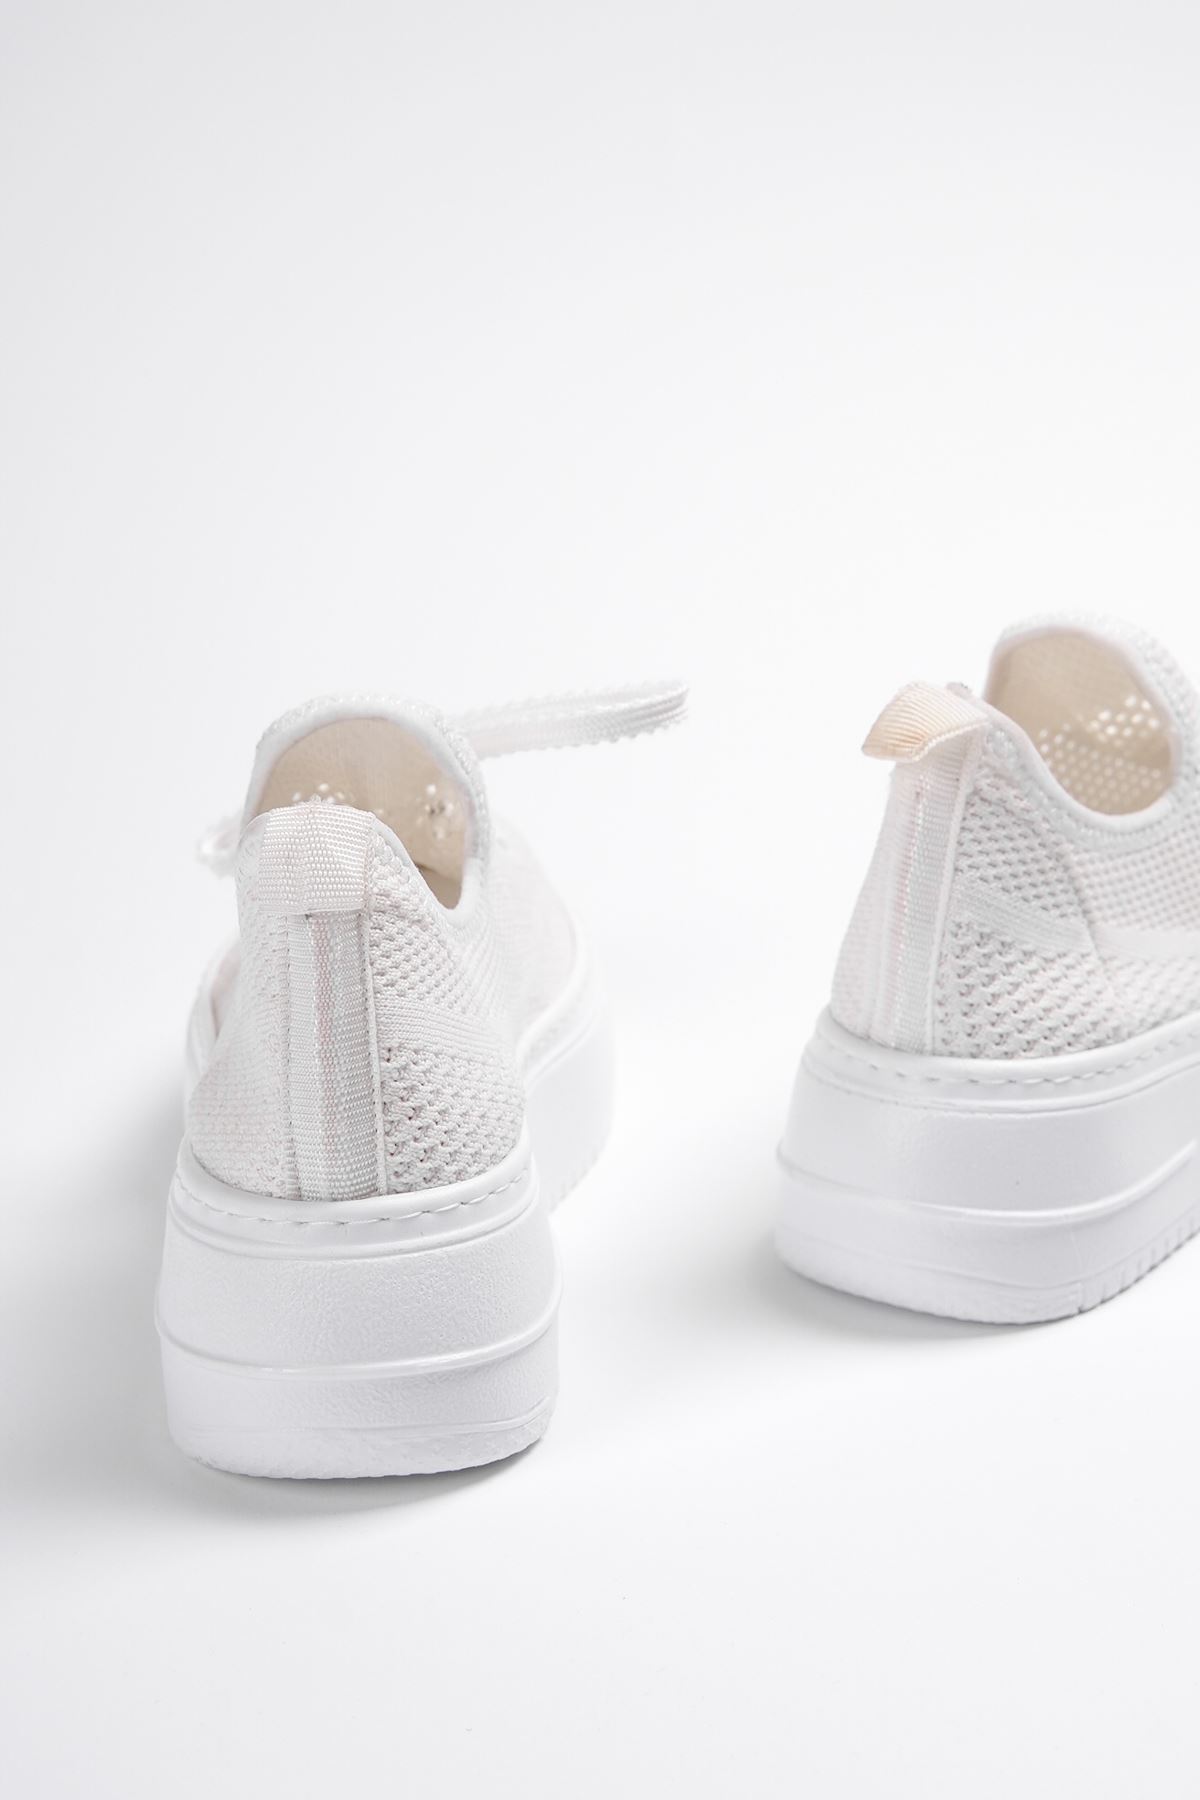 Kadın Joli Triko Bağcıklı Spor Ayakkabı - Beyaz